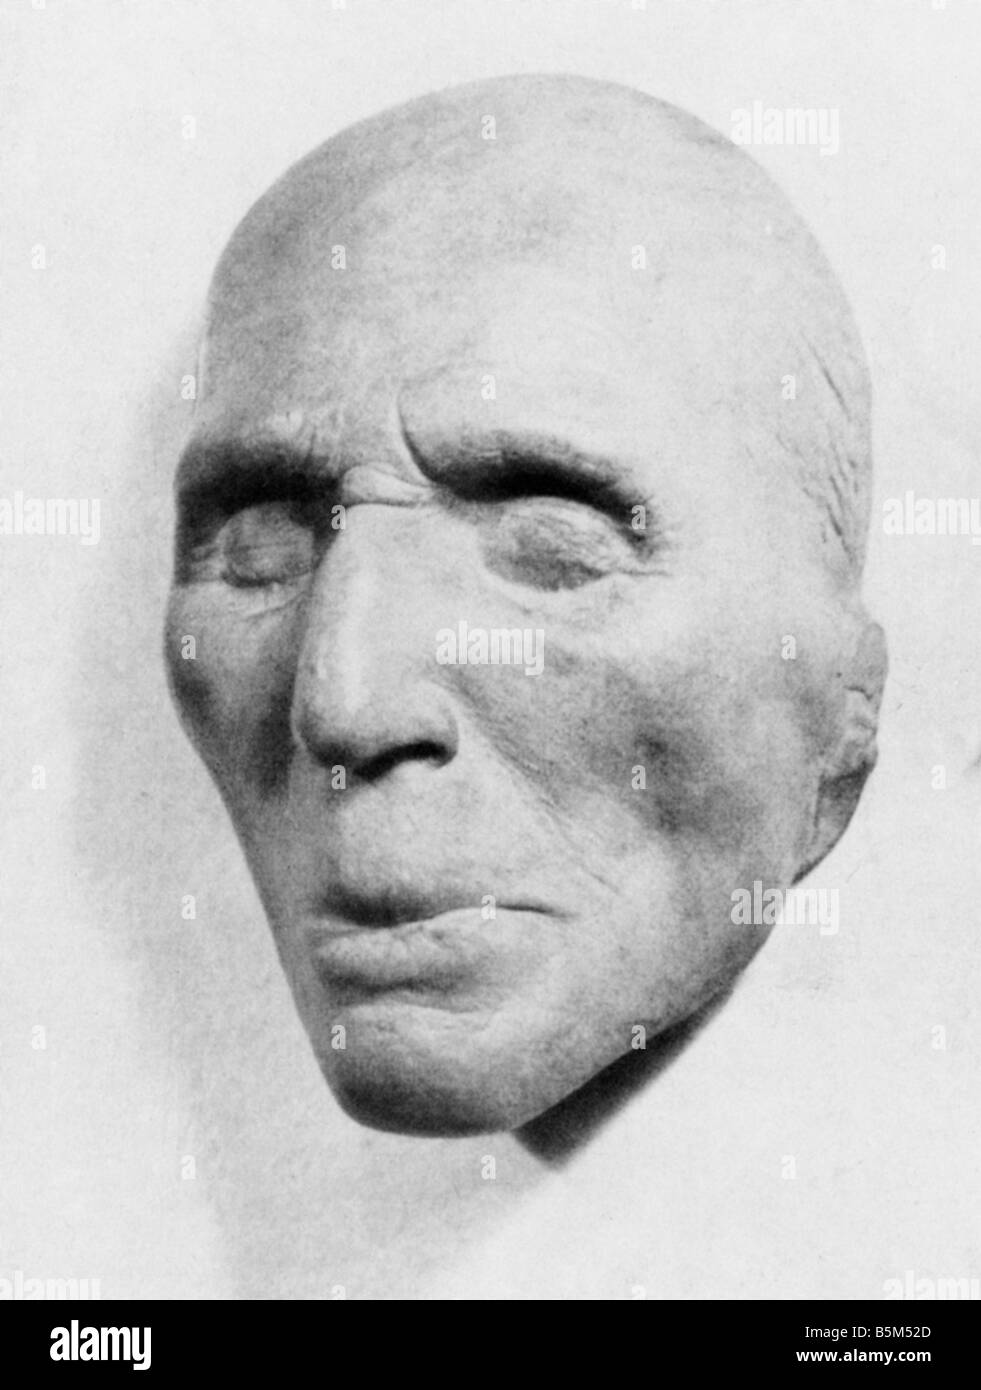 Einem, Karl Wilhelm von, llamado von Rothmaler, 1.1.1853 - 7.4.1934, general alemán, ministro de guerra, máscara de muerte, imprimir después de la foto, Foto de stock